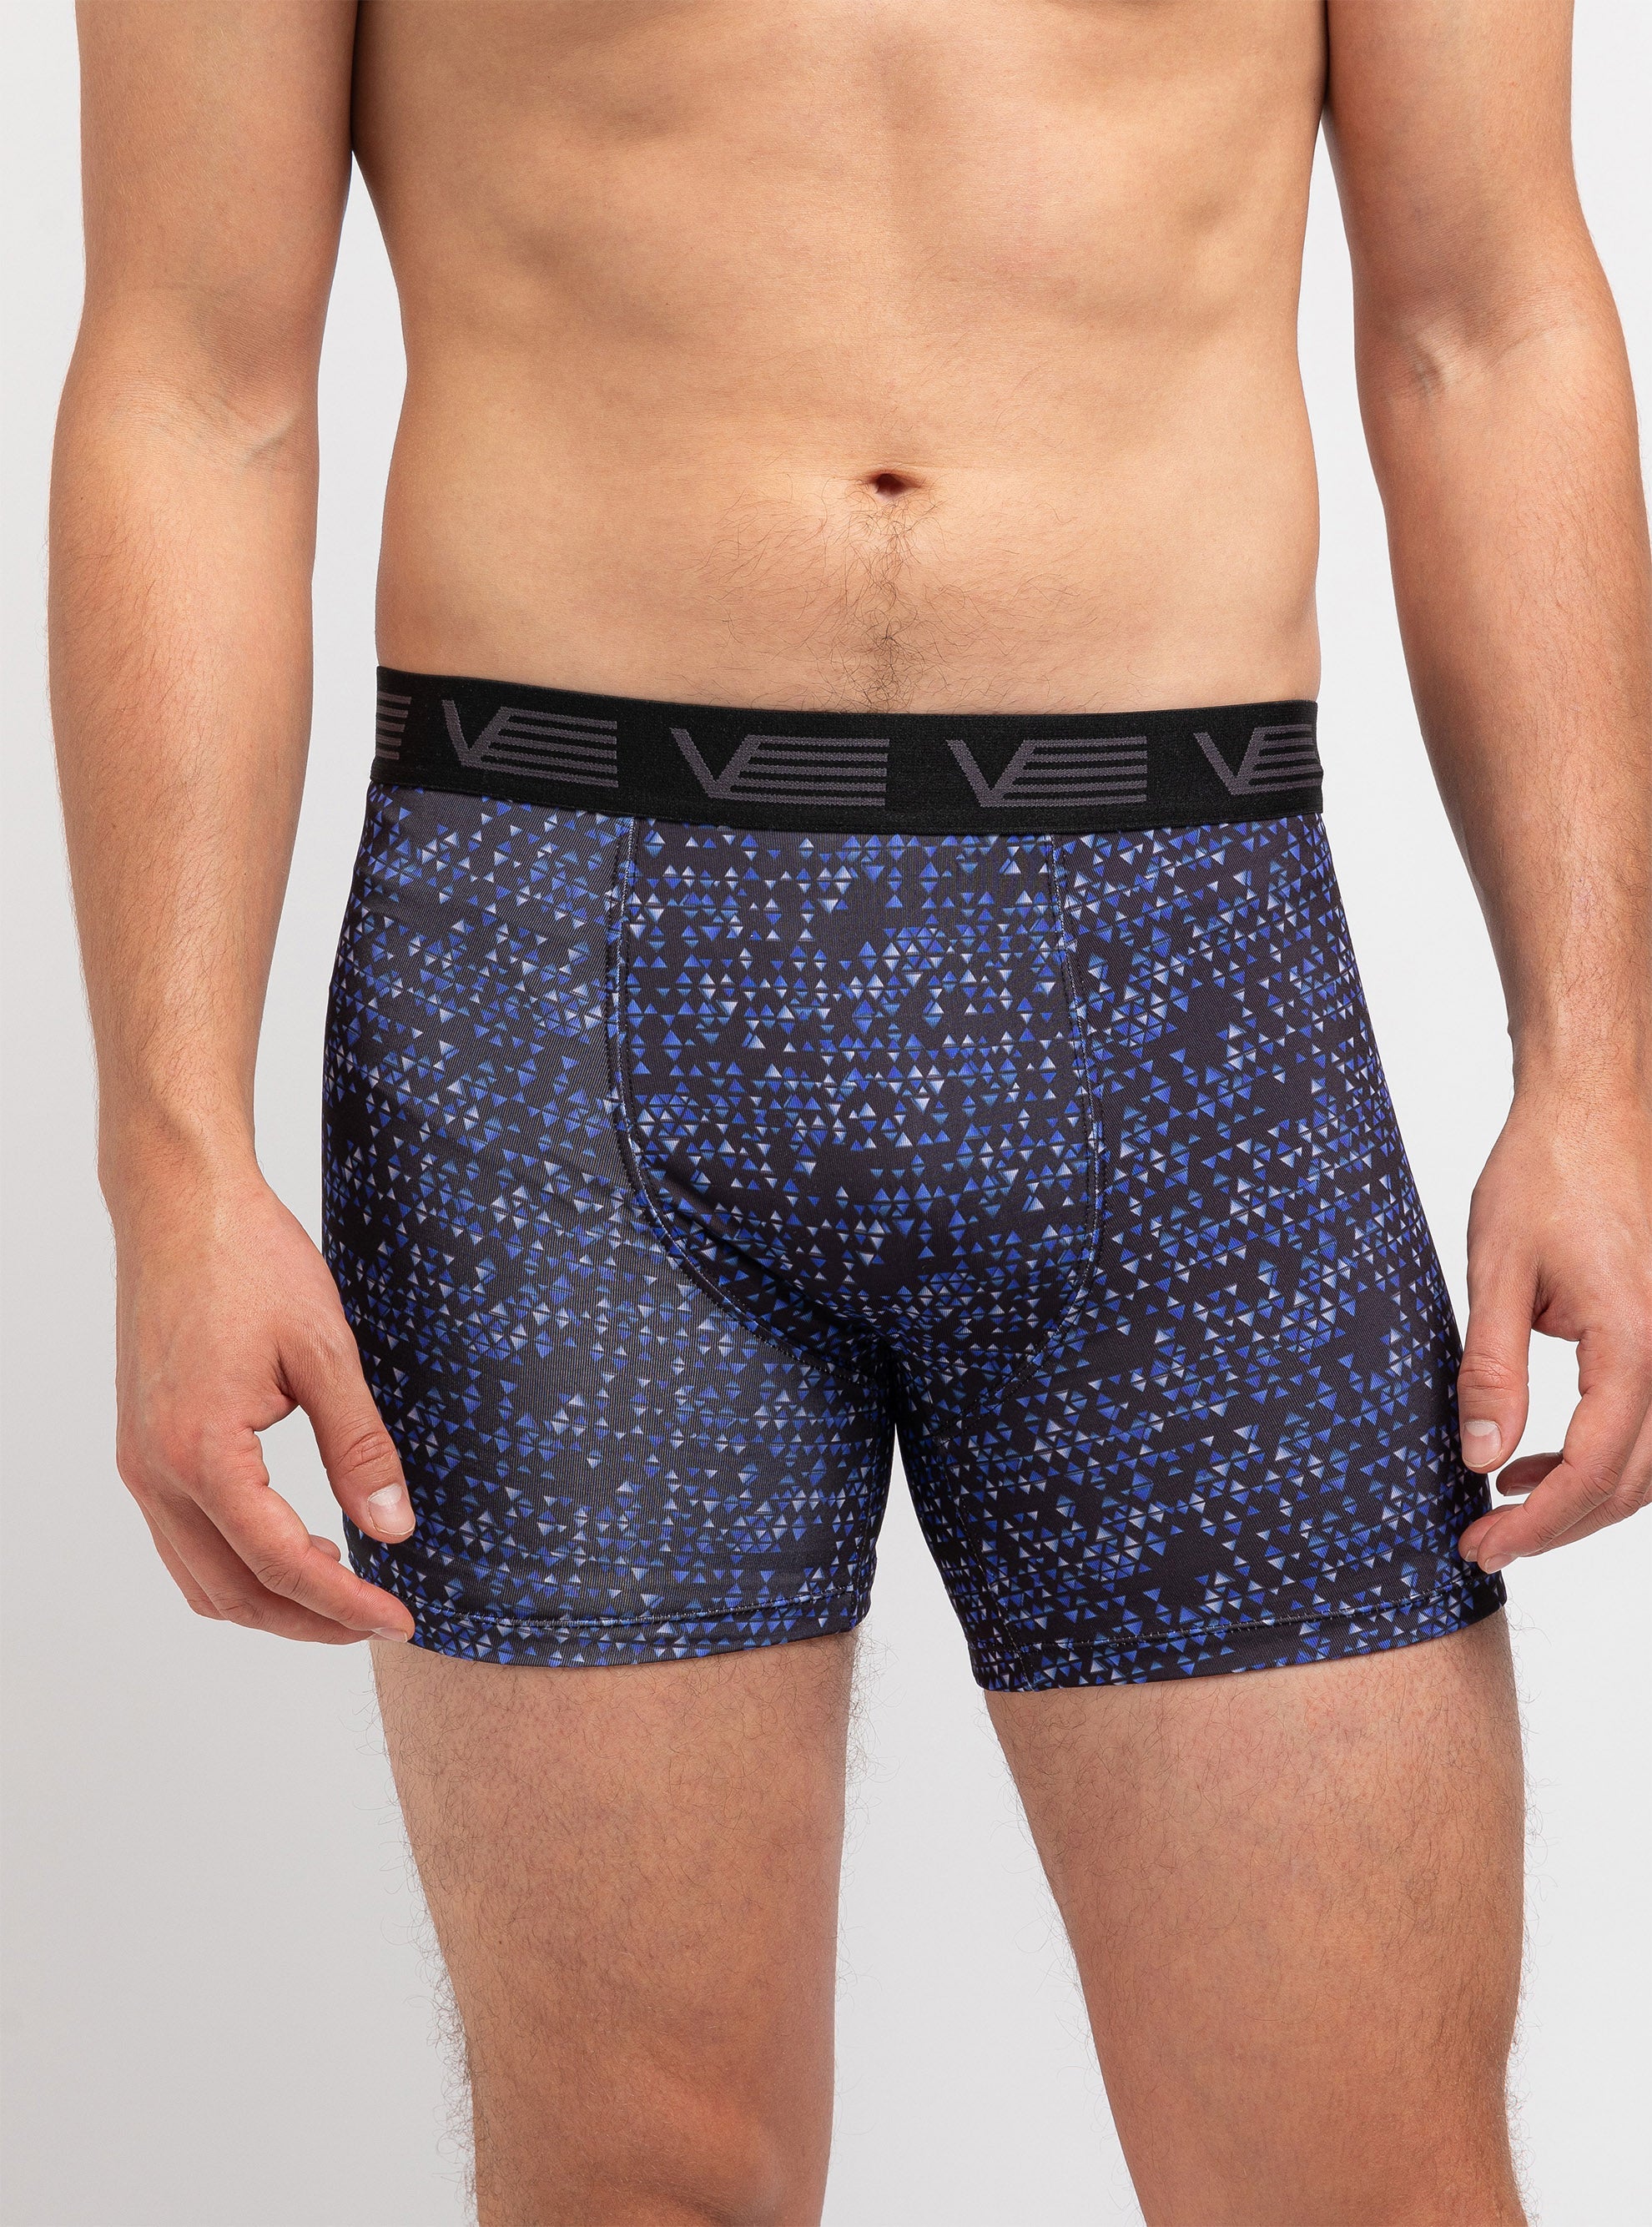 Prism print boxers